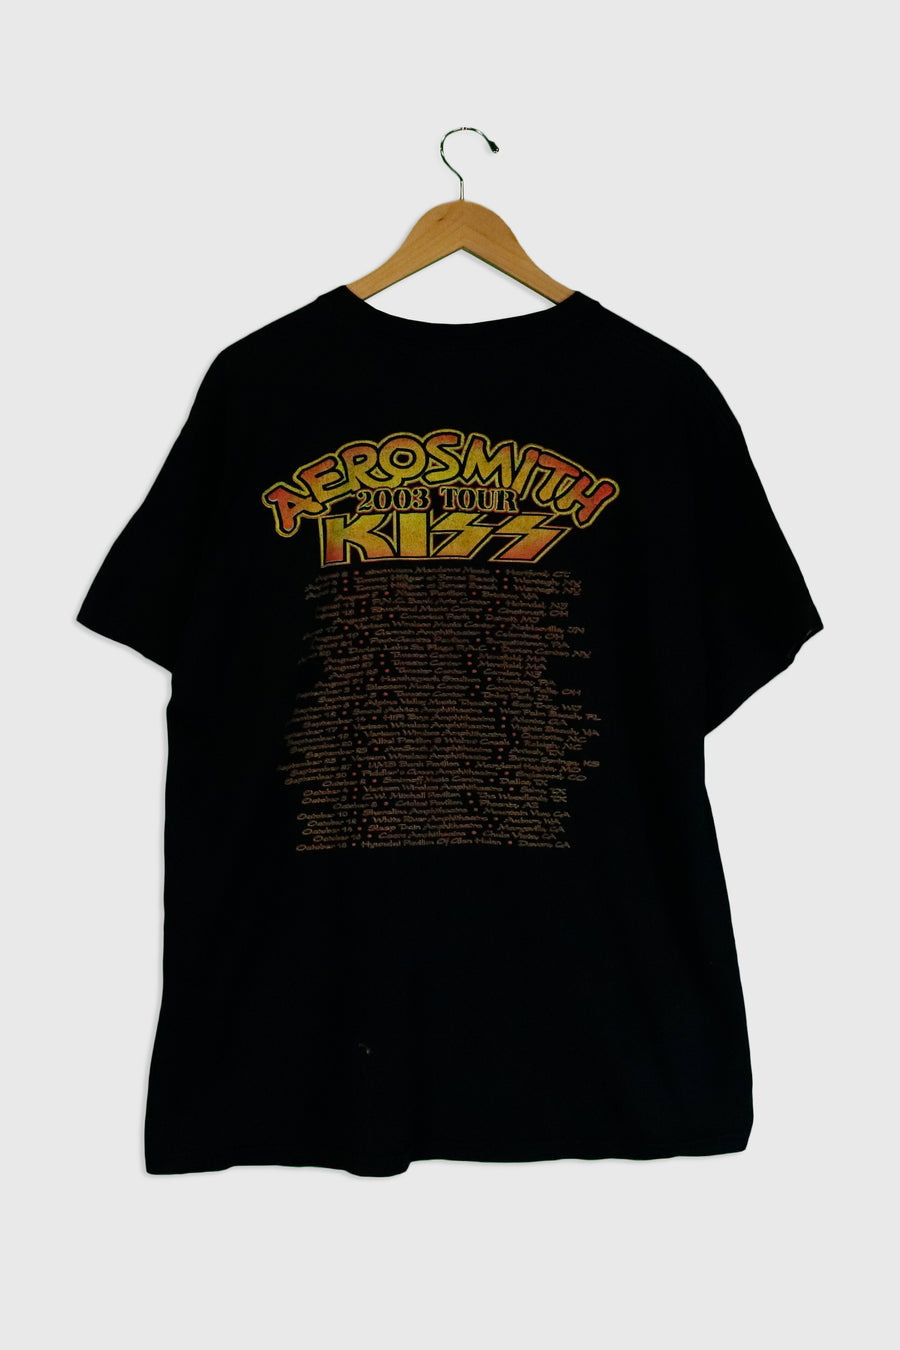 Vintage 2003 Kiss Tour With Aerosmith Vinyl T Shirt Sz XL